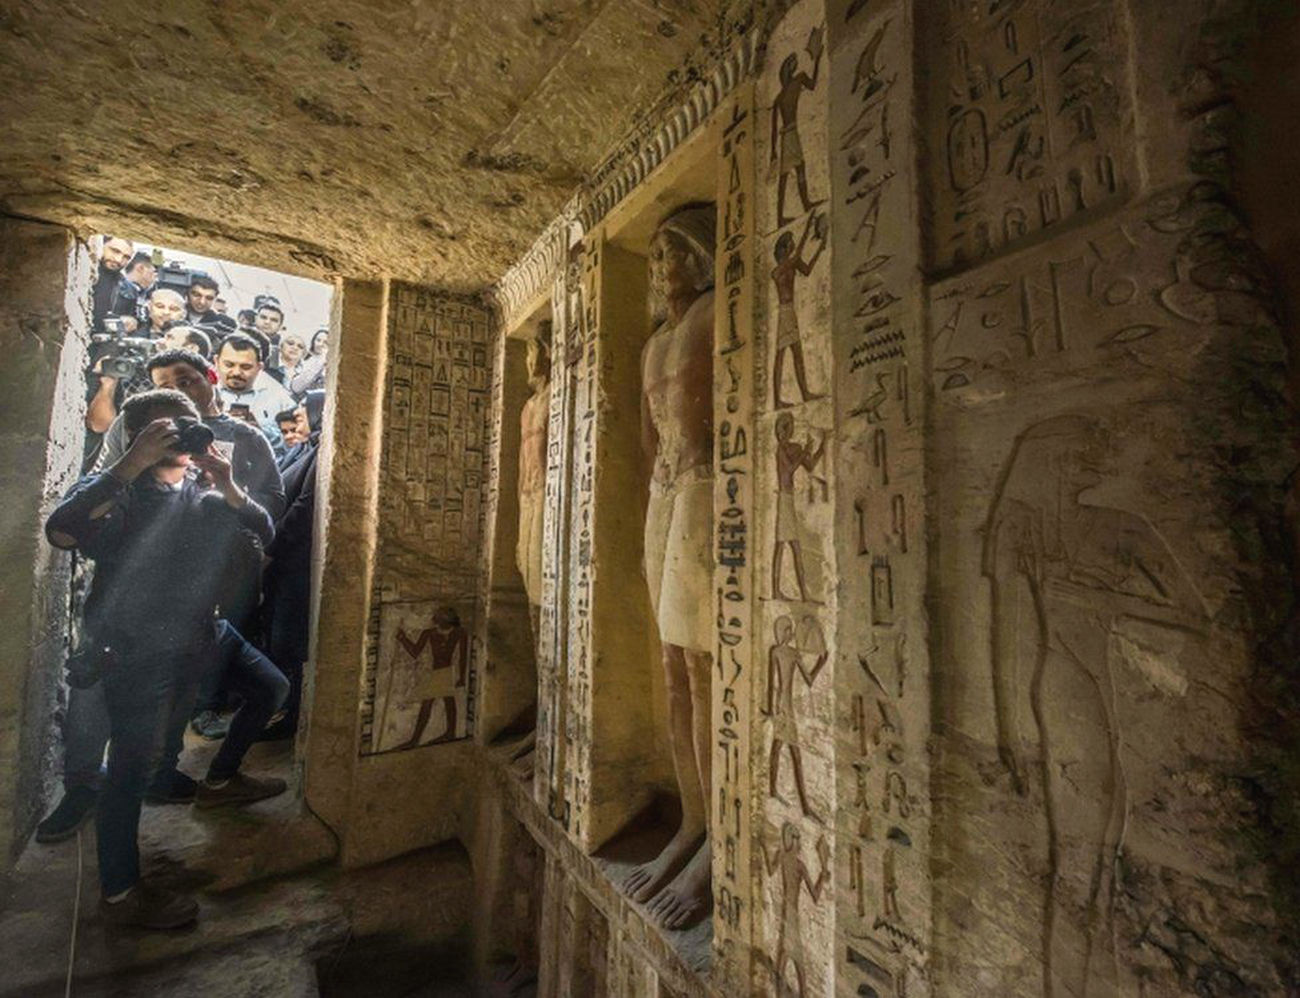 埃及金字塔群发现4400年前古墓:里面别有洞天,巨大人像栩栩如生